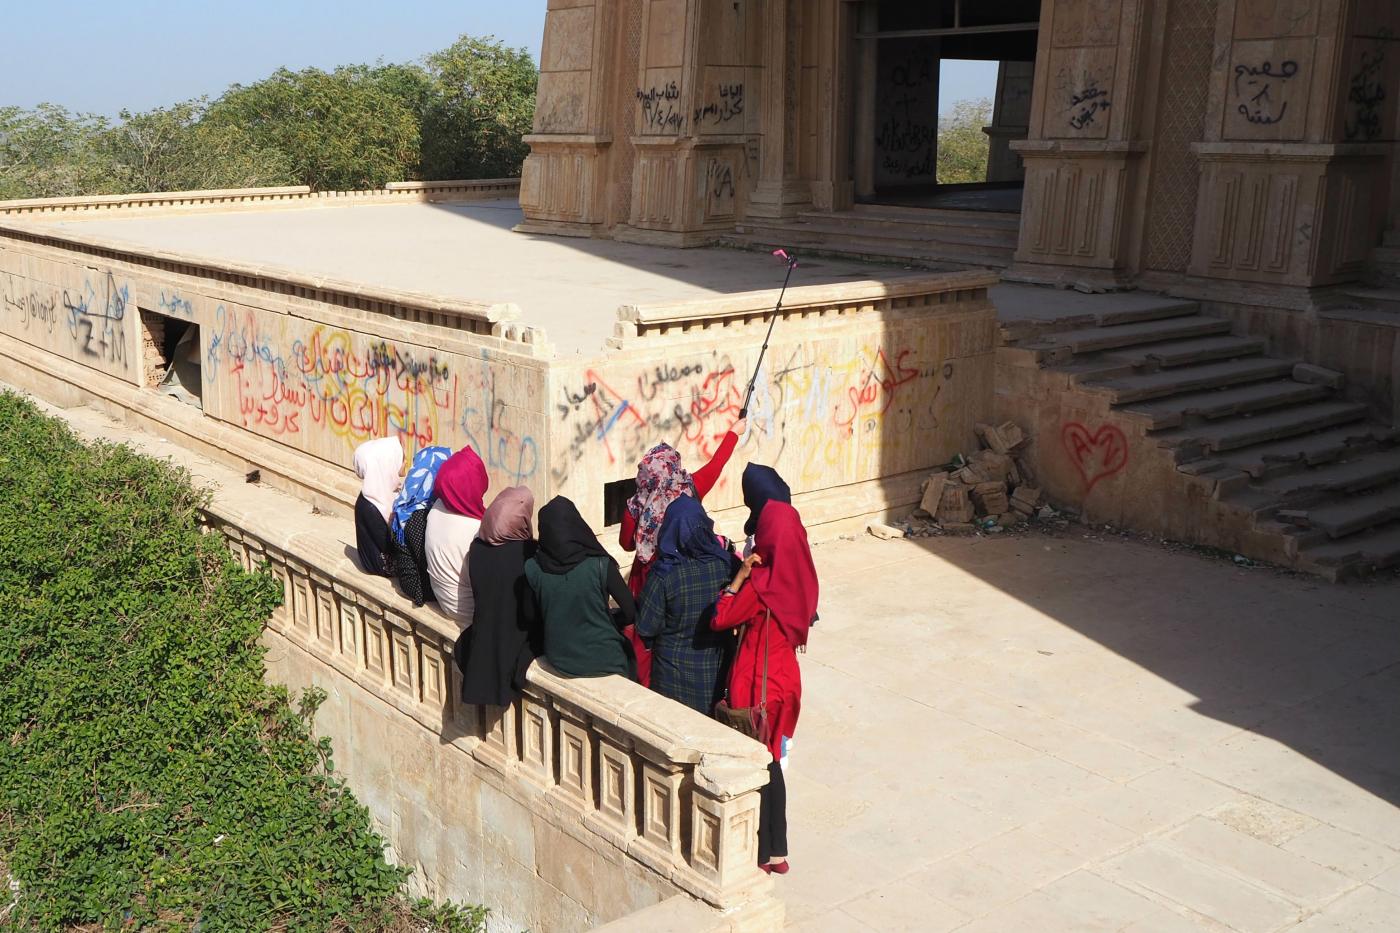 Des jeunes femmes posent pour des selfies devant le palais d’été de Saddam Hussein à Babylone (MEE/Tom Westcott)